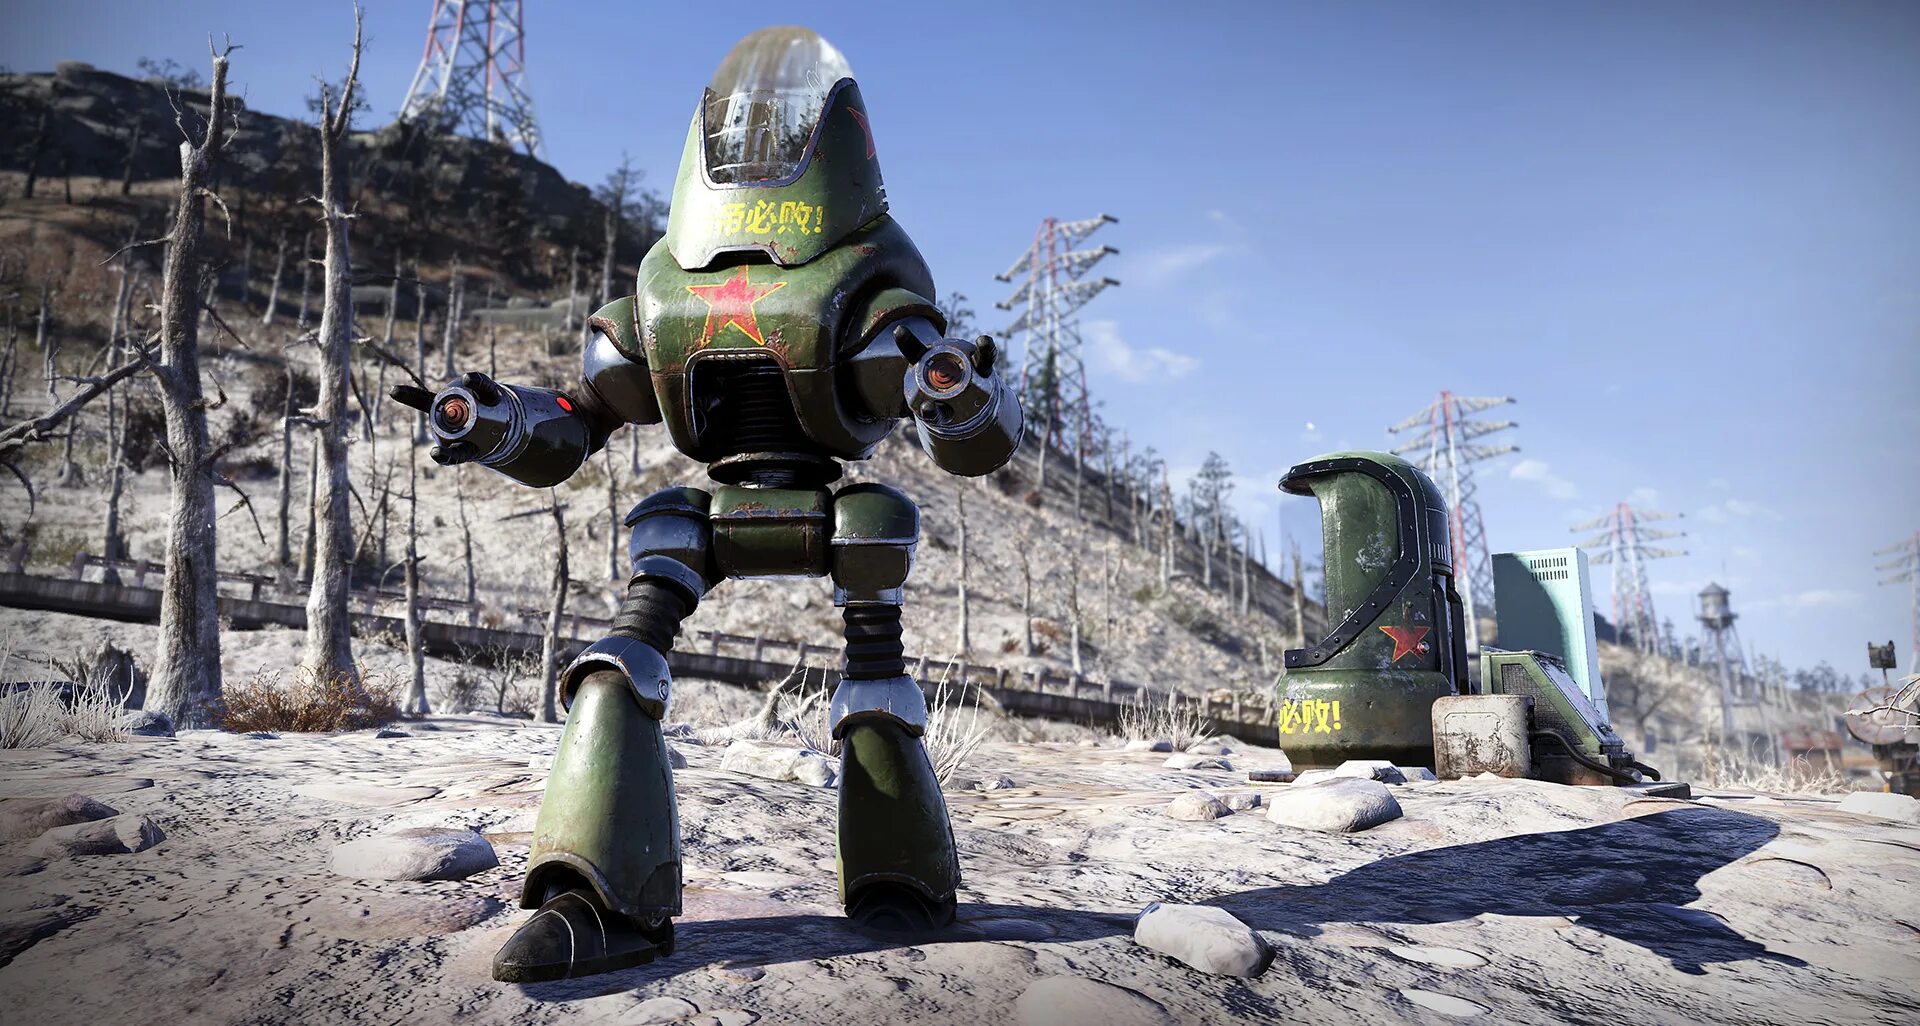 Фоллаут 76. Робот коммунист в фоллаут 76. Робот - коммунист фоллаут 4. Fallout 76 роботы. Коммунисты роботы фоллаут.